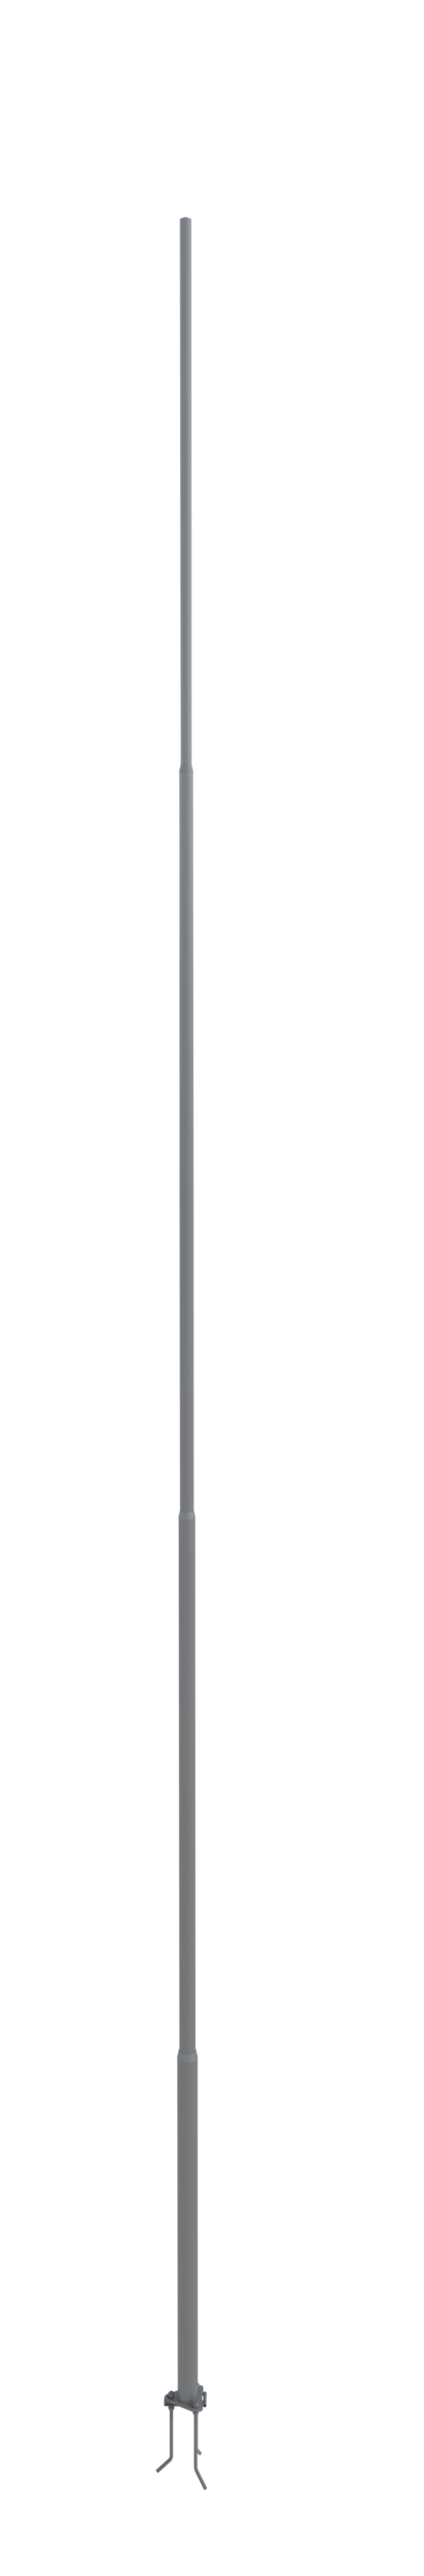 NordWerk МСАА-13 — Молниеотвод высотой 13 метров для активных молниеприемников (алюминий)